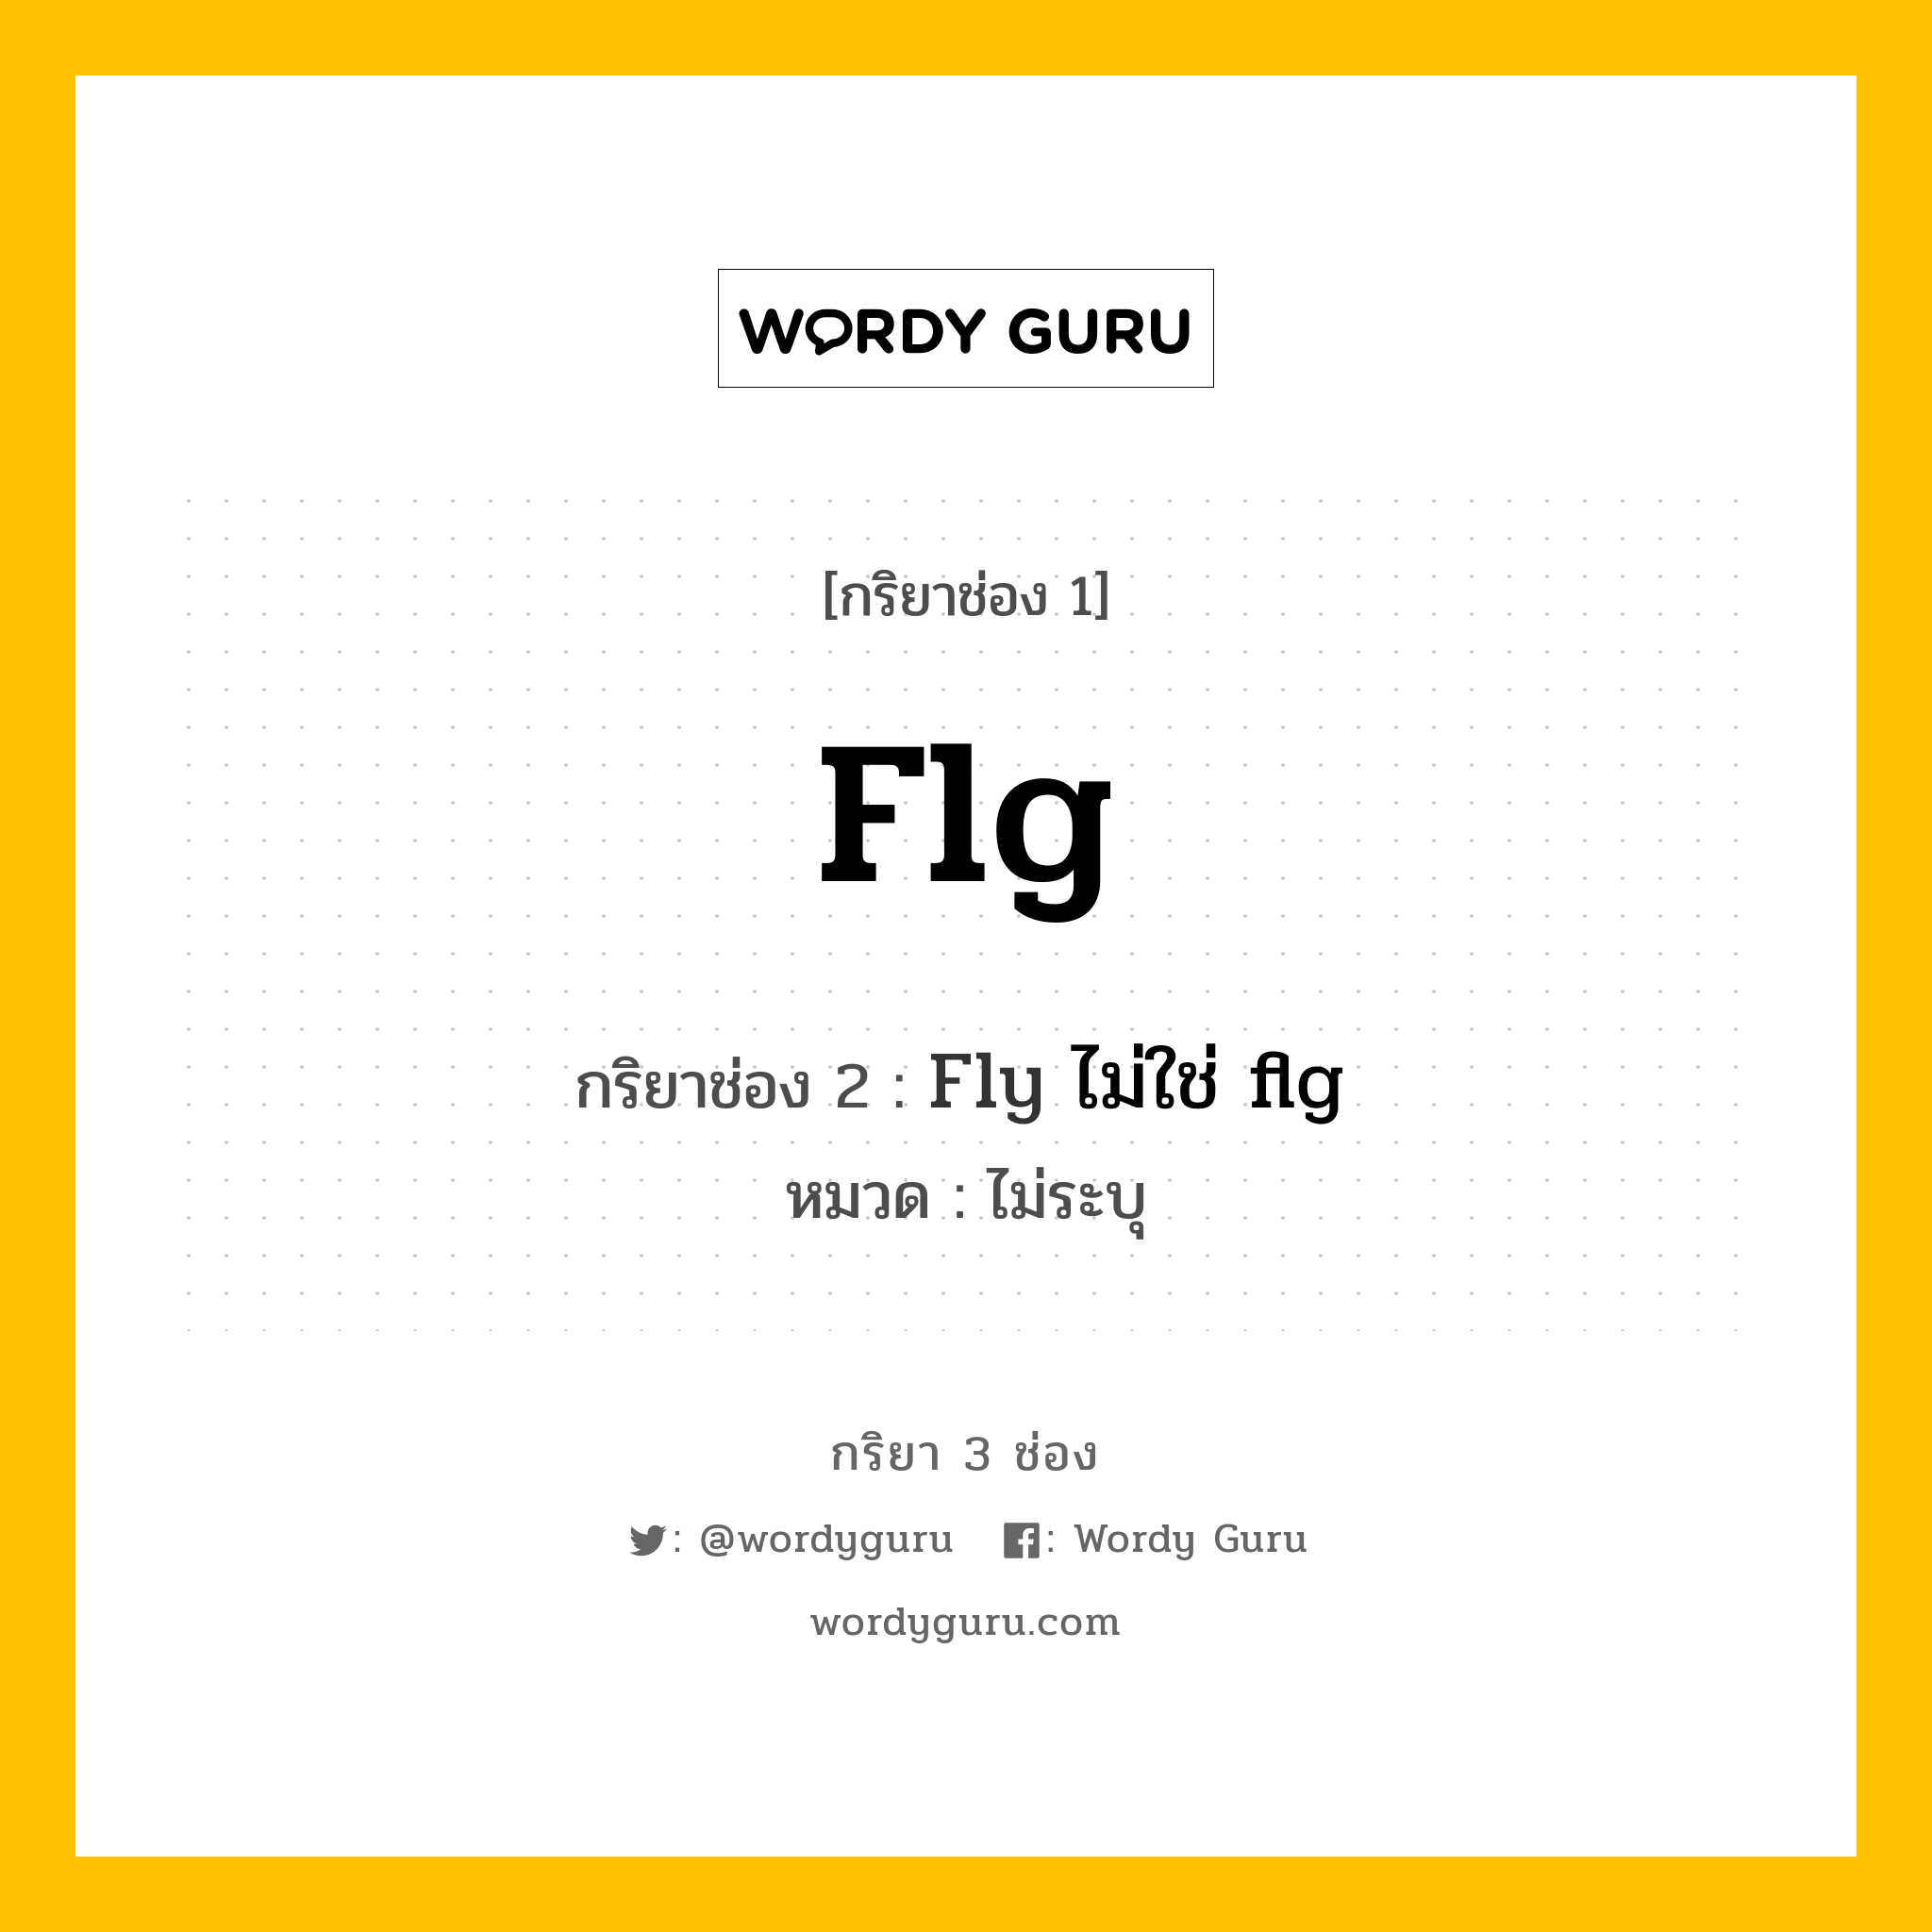 กริยา 3 ช่อง ของ Flg คืออะไร? มาดูคำอ่าน คำแปลกันเลย, กริยาช่อง 1 Flg กริยาช่อง 2 Fly ไม่ใช่ flg หมวด ไม่ระบุ หมวด ไม่ระบุ